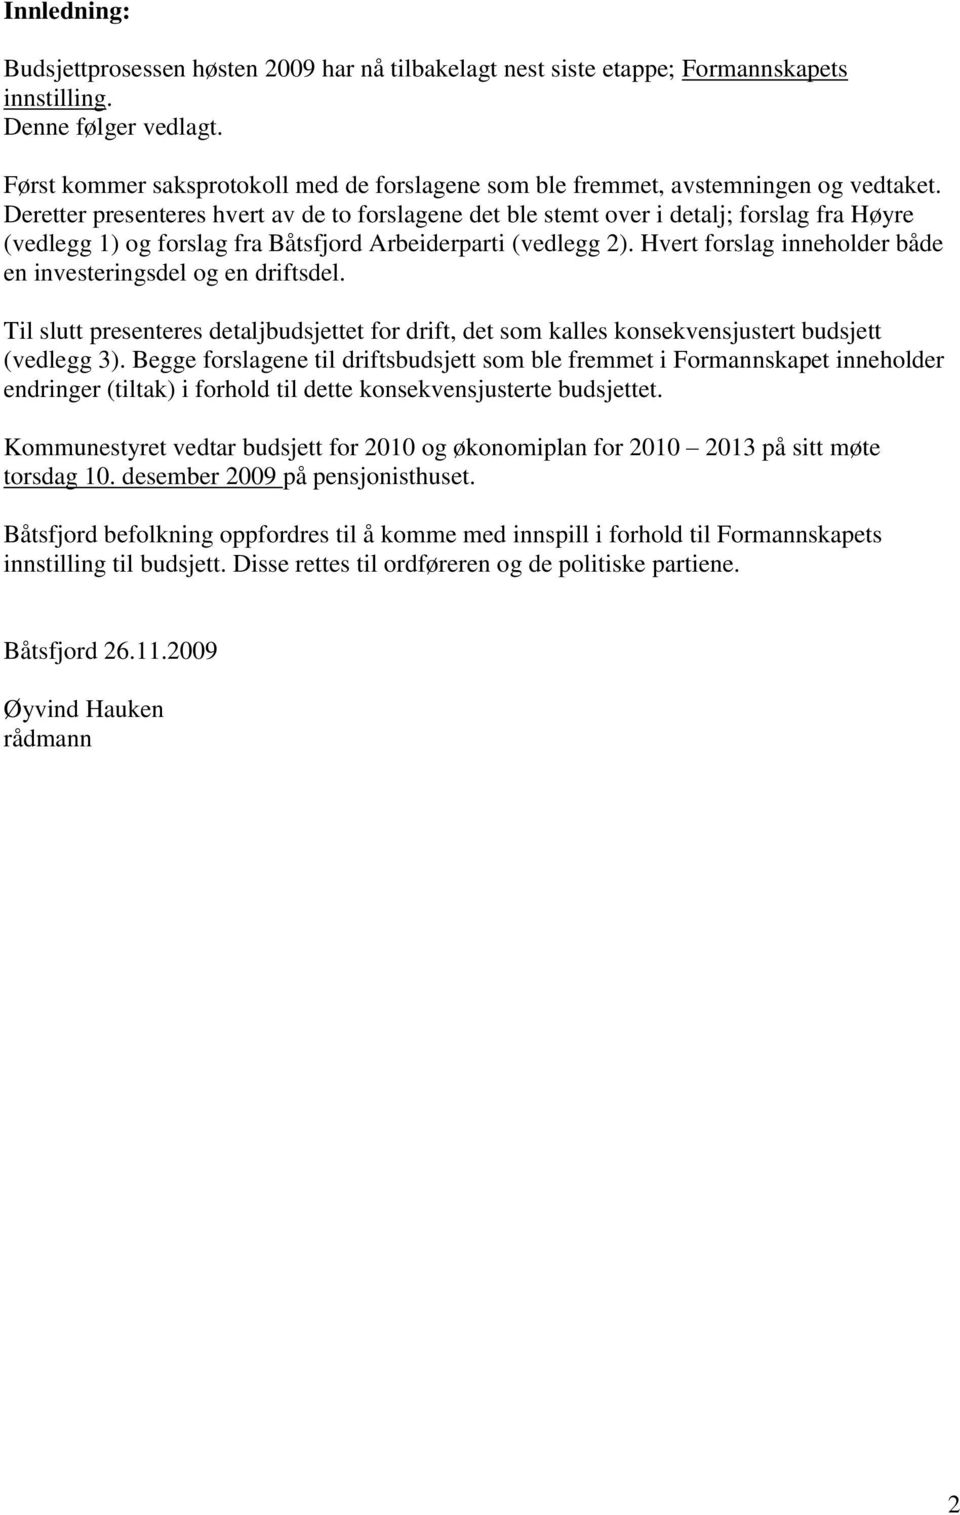 Deretter presenteres hvert av de to forslagene det ble stemt over i detalj; forslag fra Høyre (vedlegg 1) og forslag fra Båtsfjord Arbeiderparti (vedlegg 2).